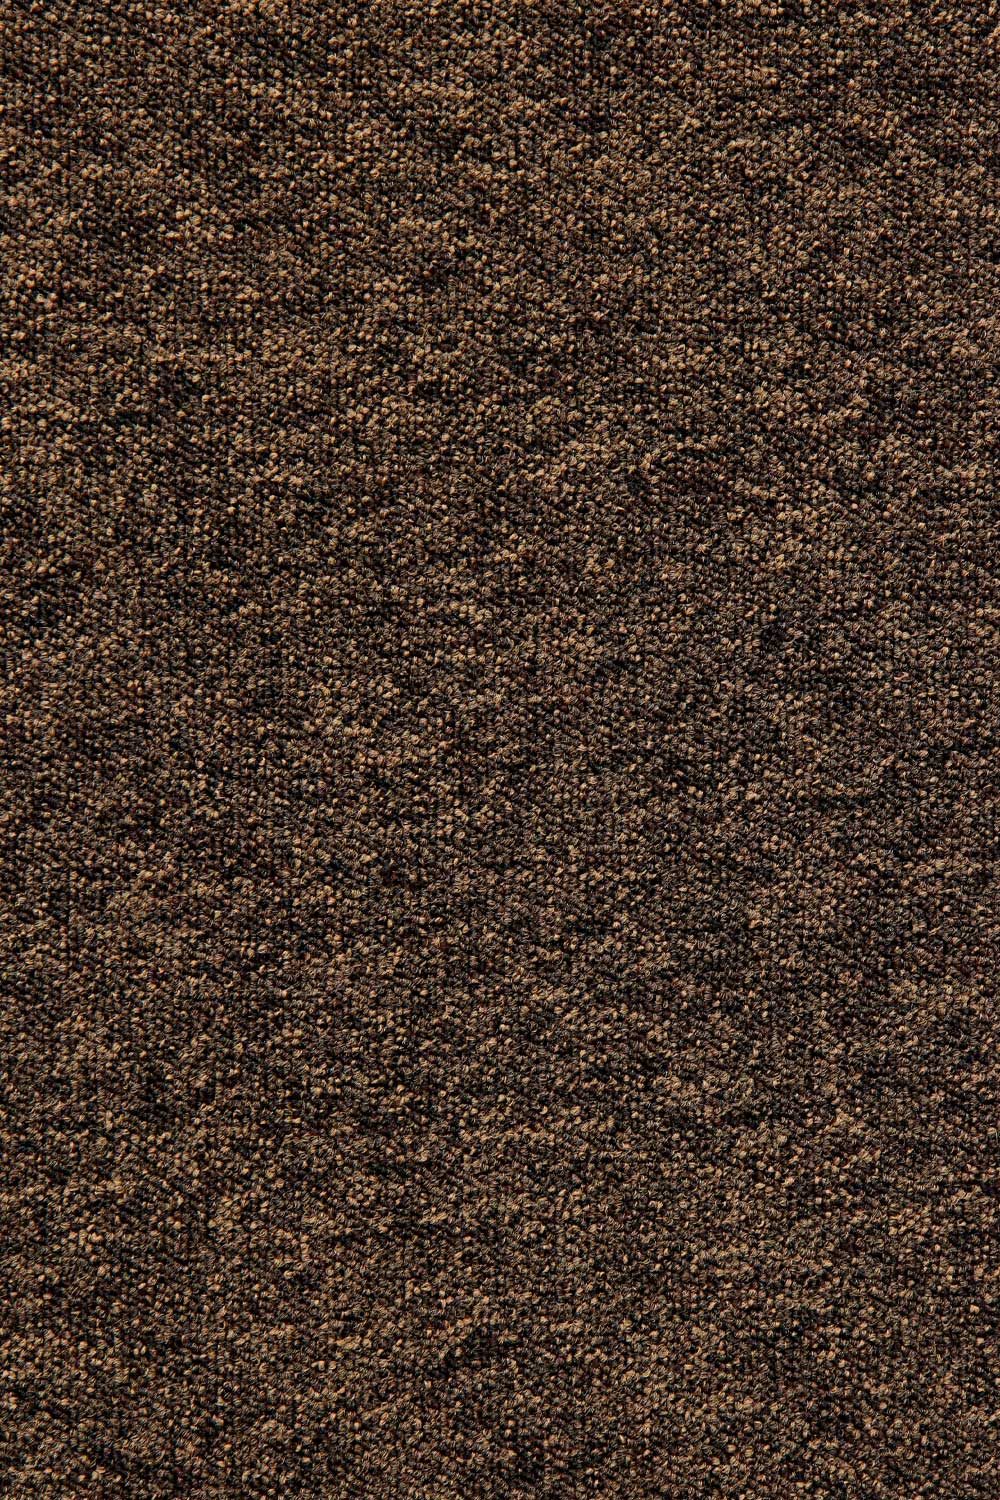 Metrážový koberec Lyon Solid 282